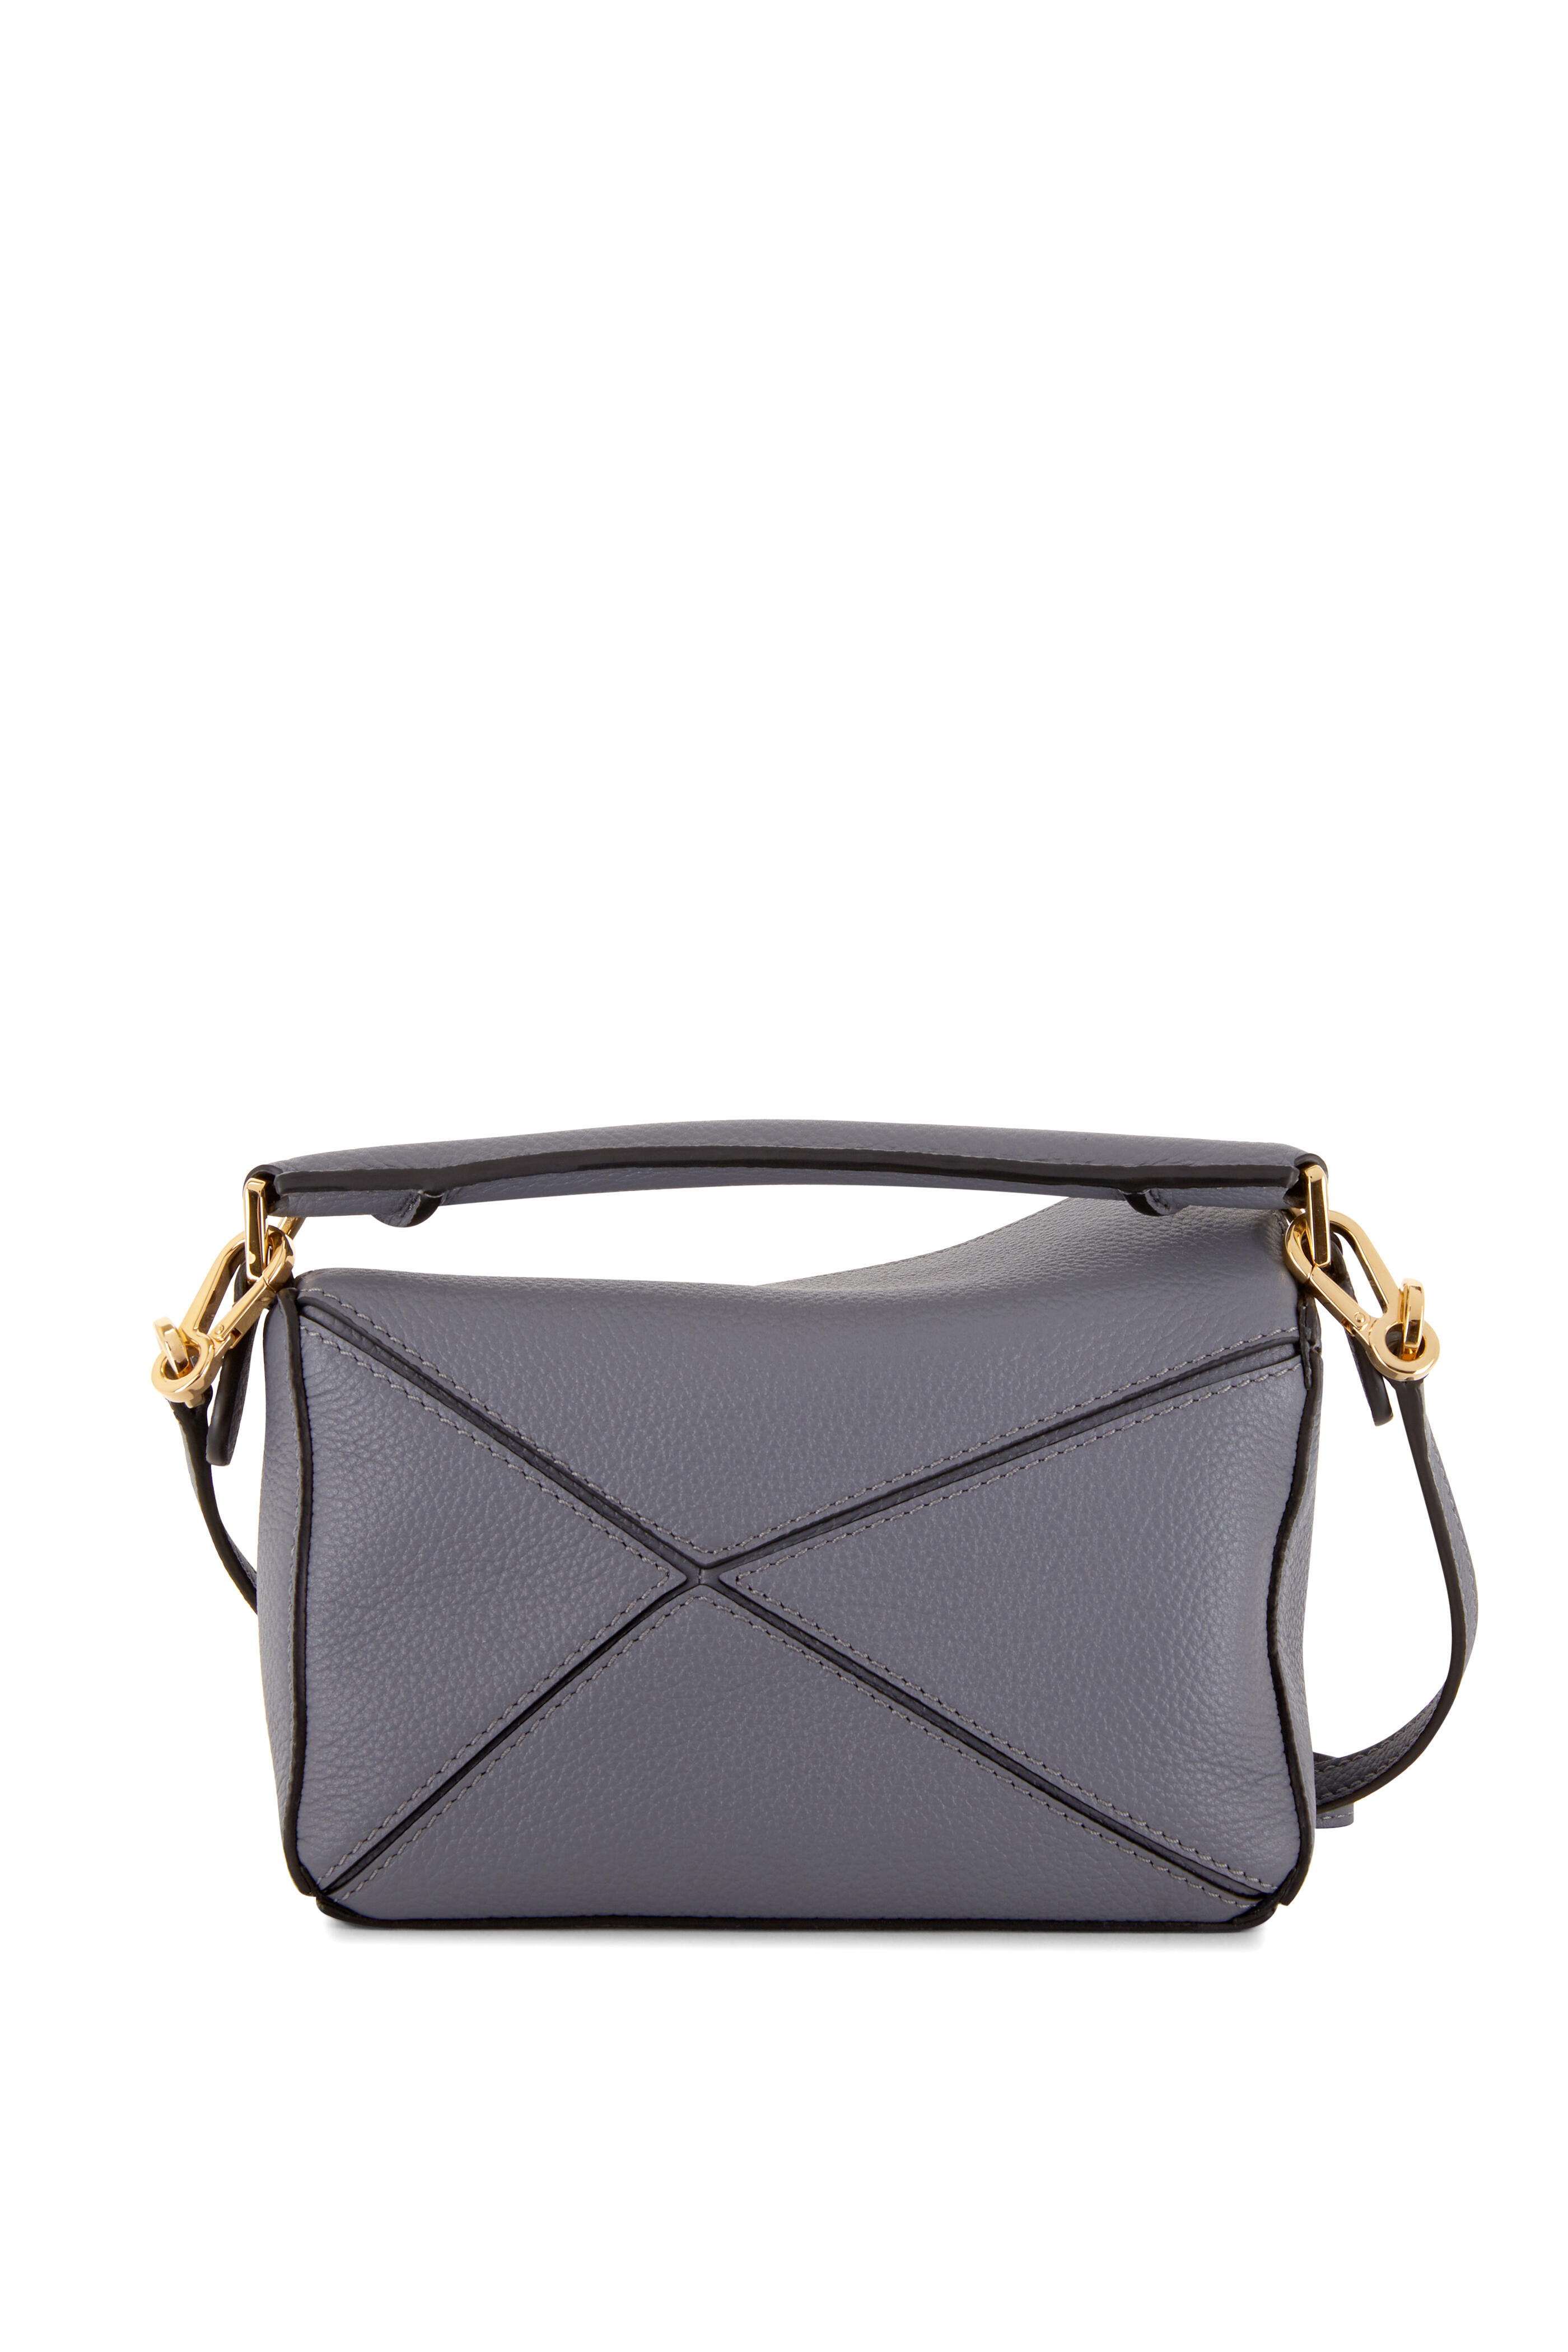 Loewe - Mini Puzzle Asphalt Gray Leather Shoulder Bag